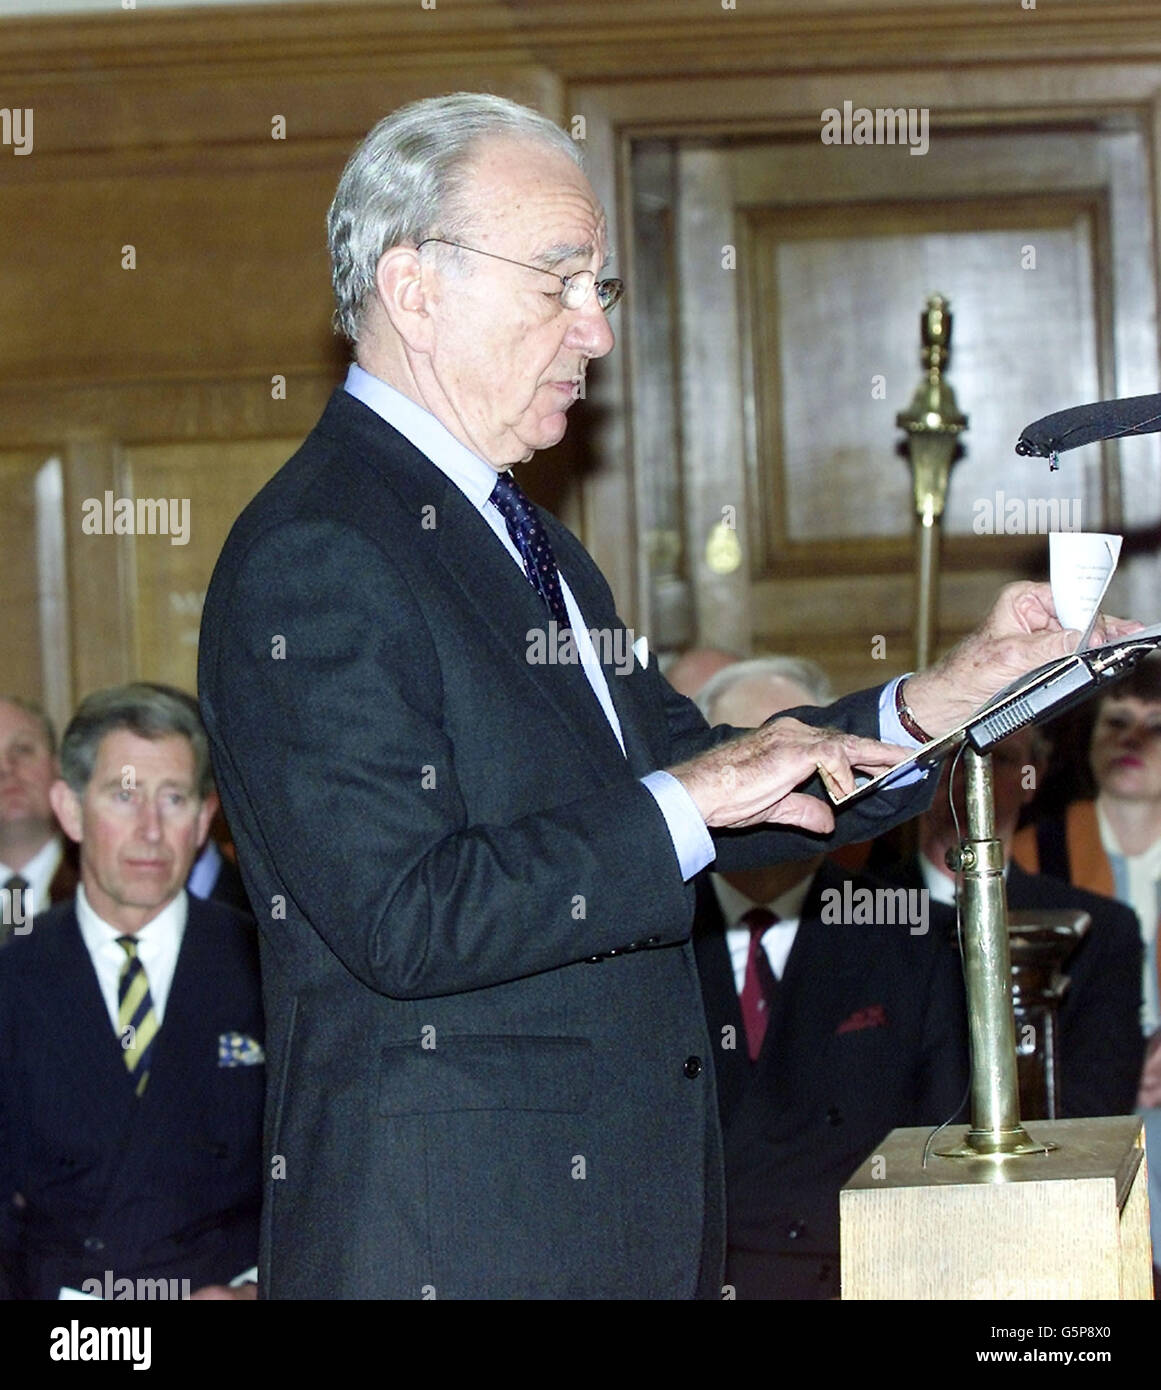 Der Prinz von Wales (linker Hintergrund) hört Rupert Murdoch, Präsident von News Corp, während eines Gottesdienstes in der St. Bride's Church in der Londoner Fleet Street, um 300 Jahre Zeitungsbranche in der Fleet Street zu feiern. Stockfoto